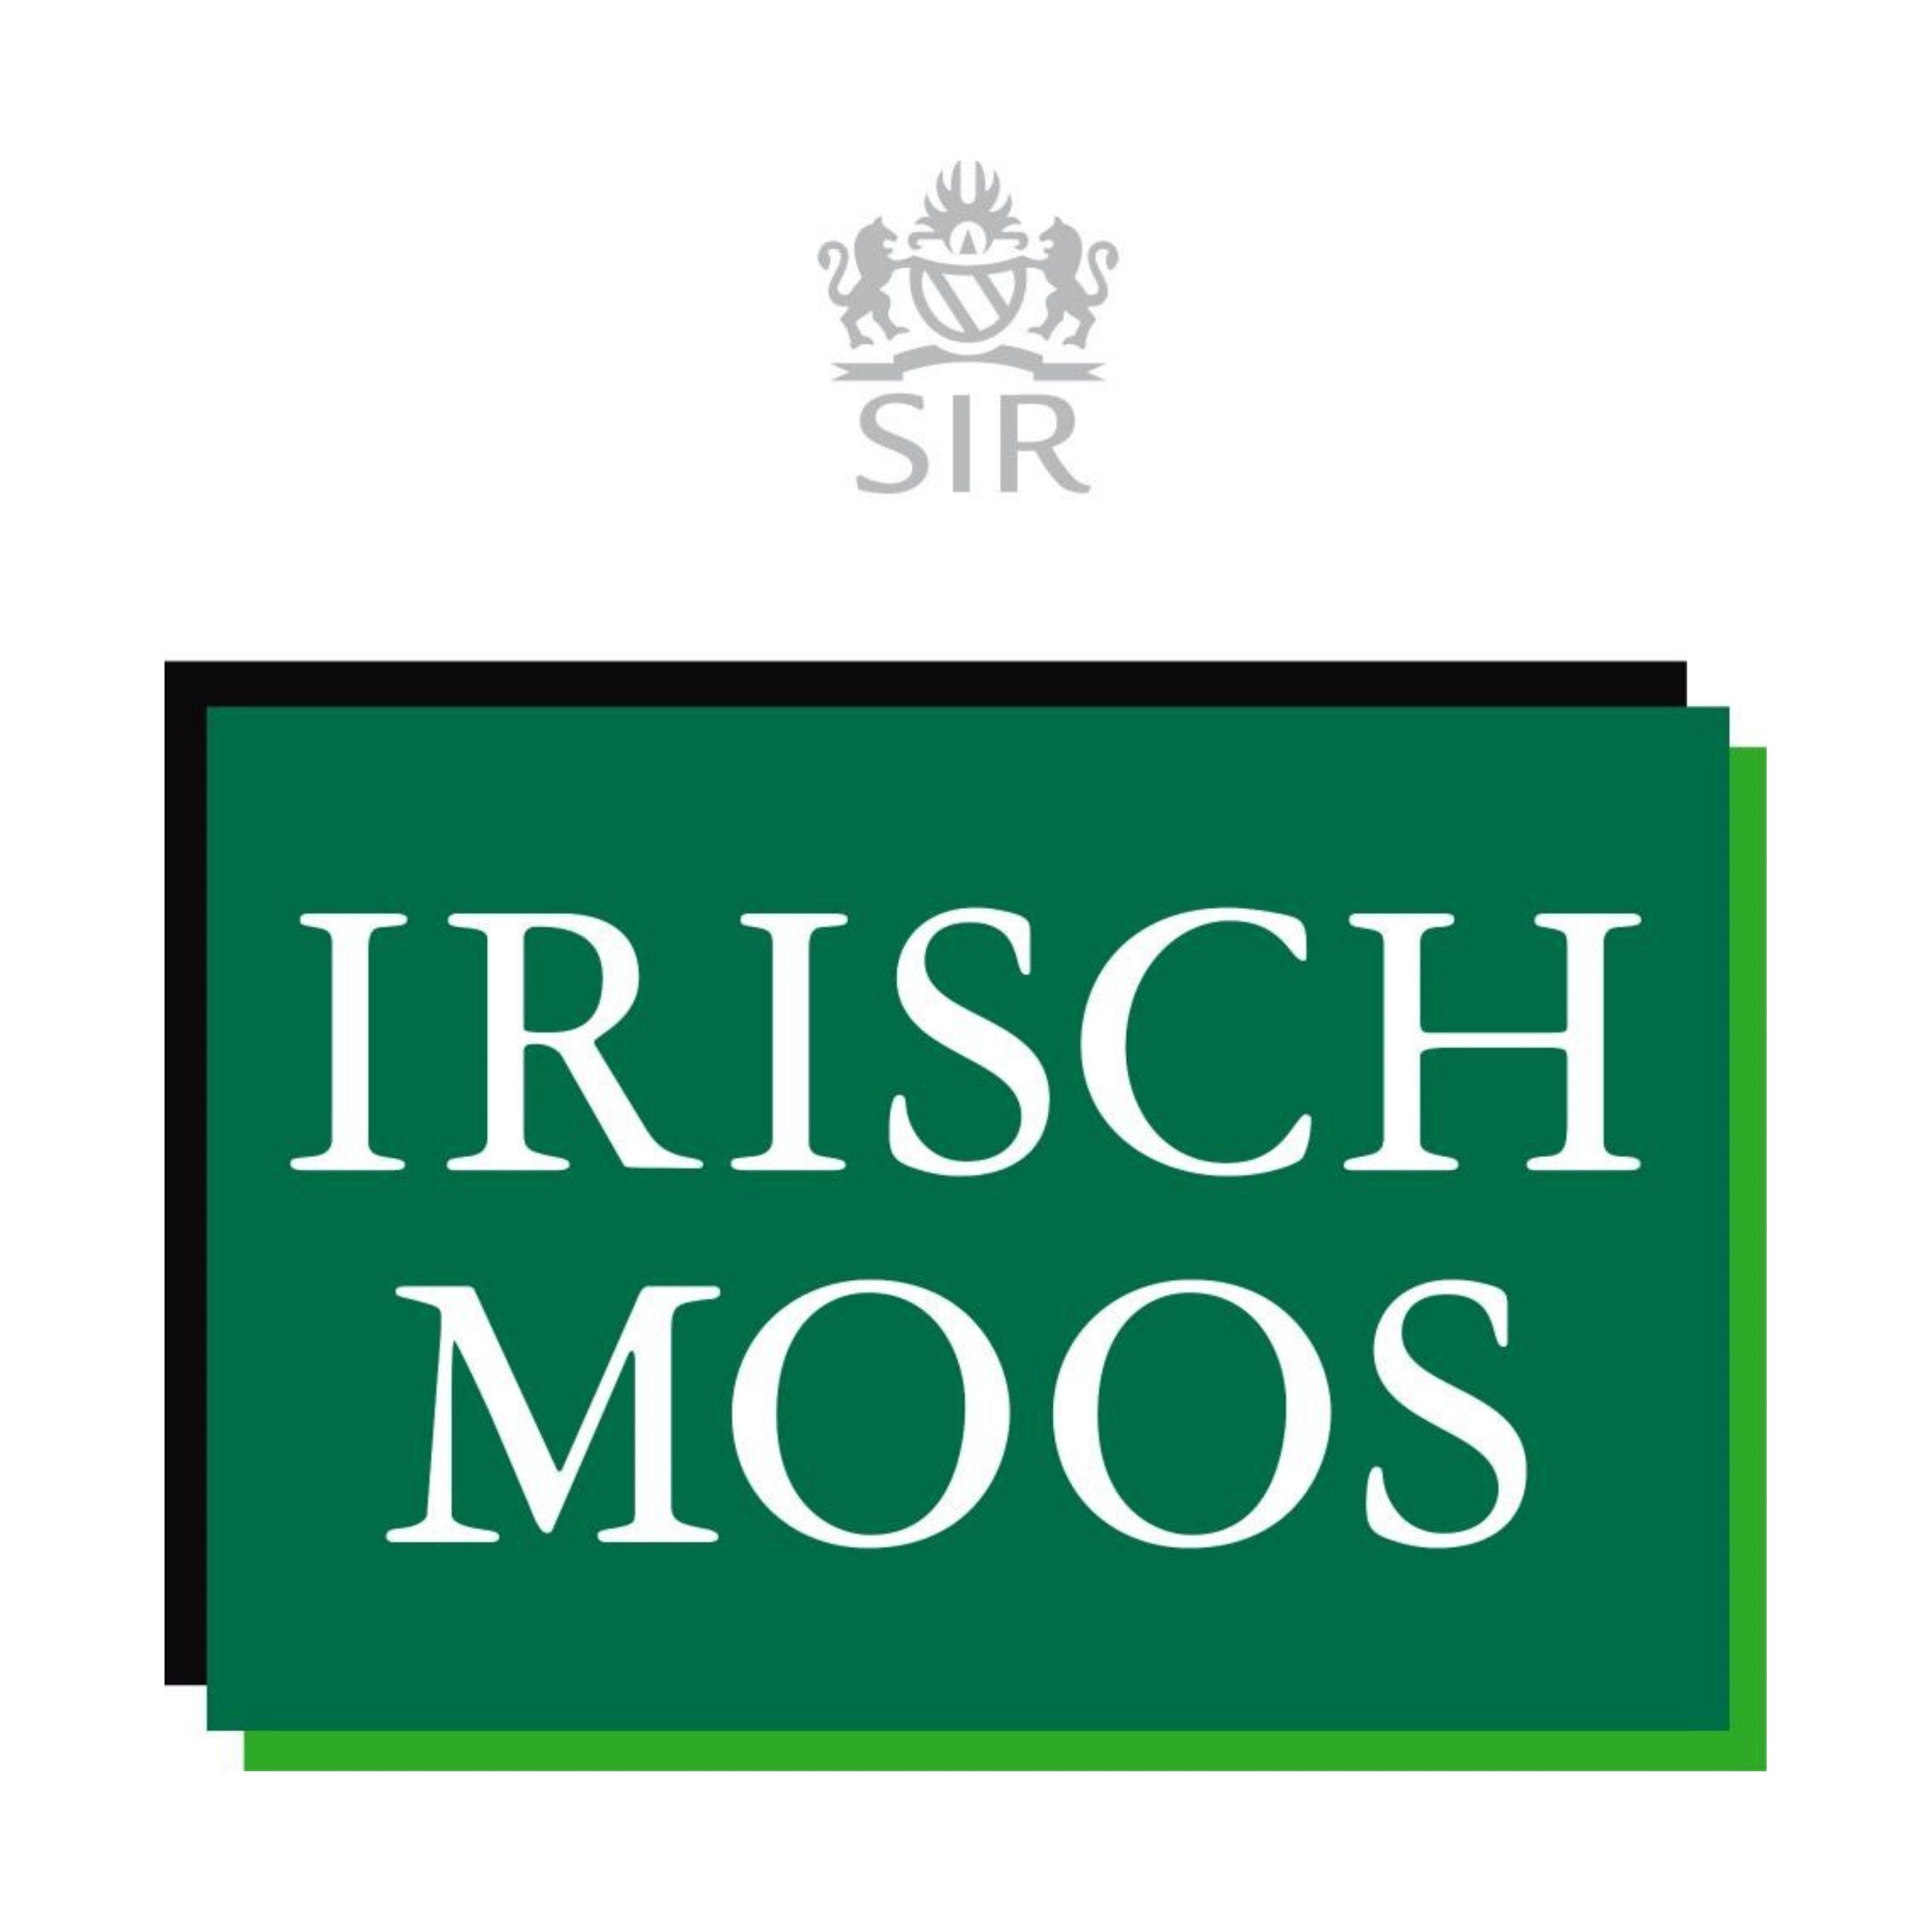 Sir Irisch Moos Gesichts-Reinigungslotion SIR IRISCH Pre ml Shave MOOS 150